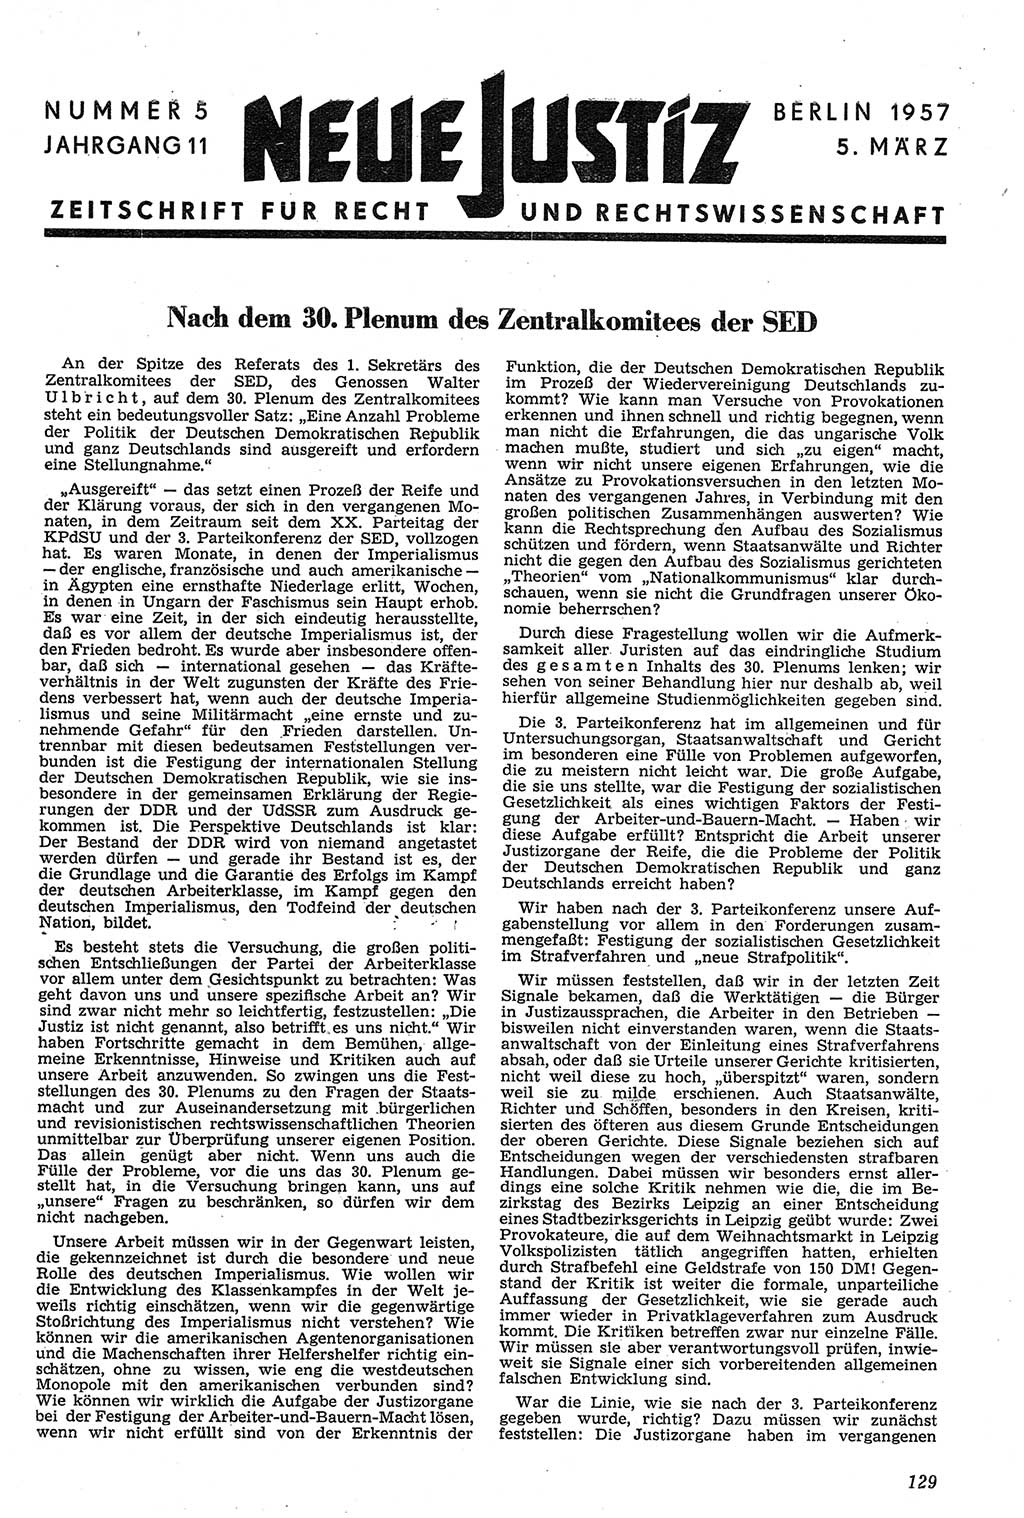 Neue Justiz (NJ), Zeitschrift für Recht und Rechtswissenschaft [Deutsche Demokratische Republik (DDR)], 11. Jahrgang 1957, Seite 129 (NJ DDR 1957, S. 129)